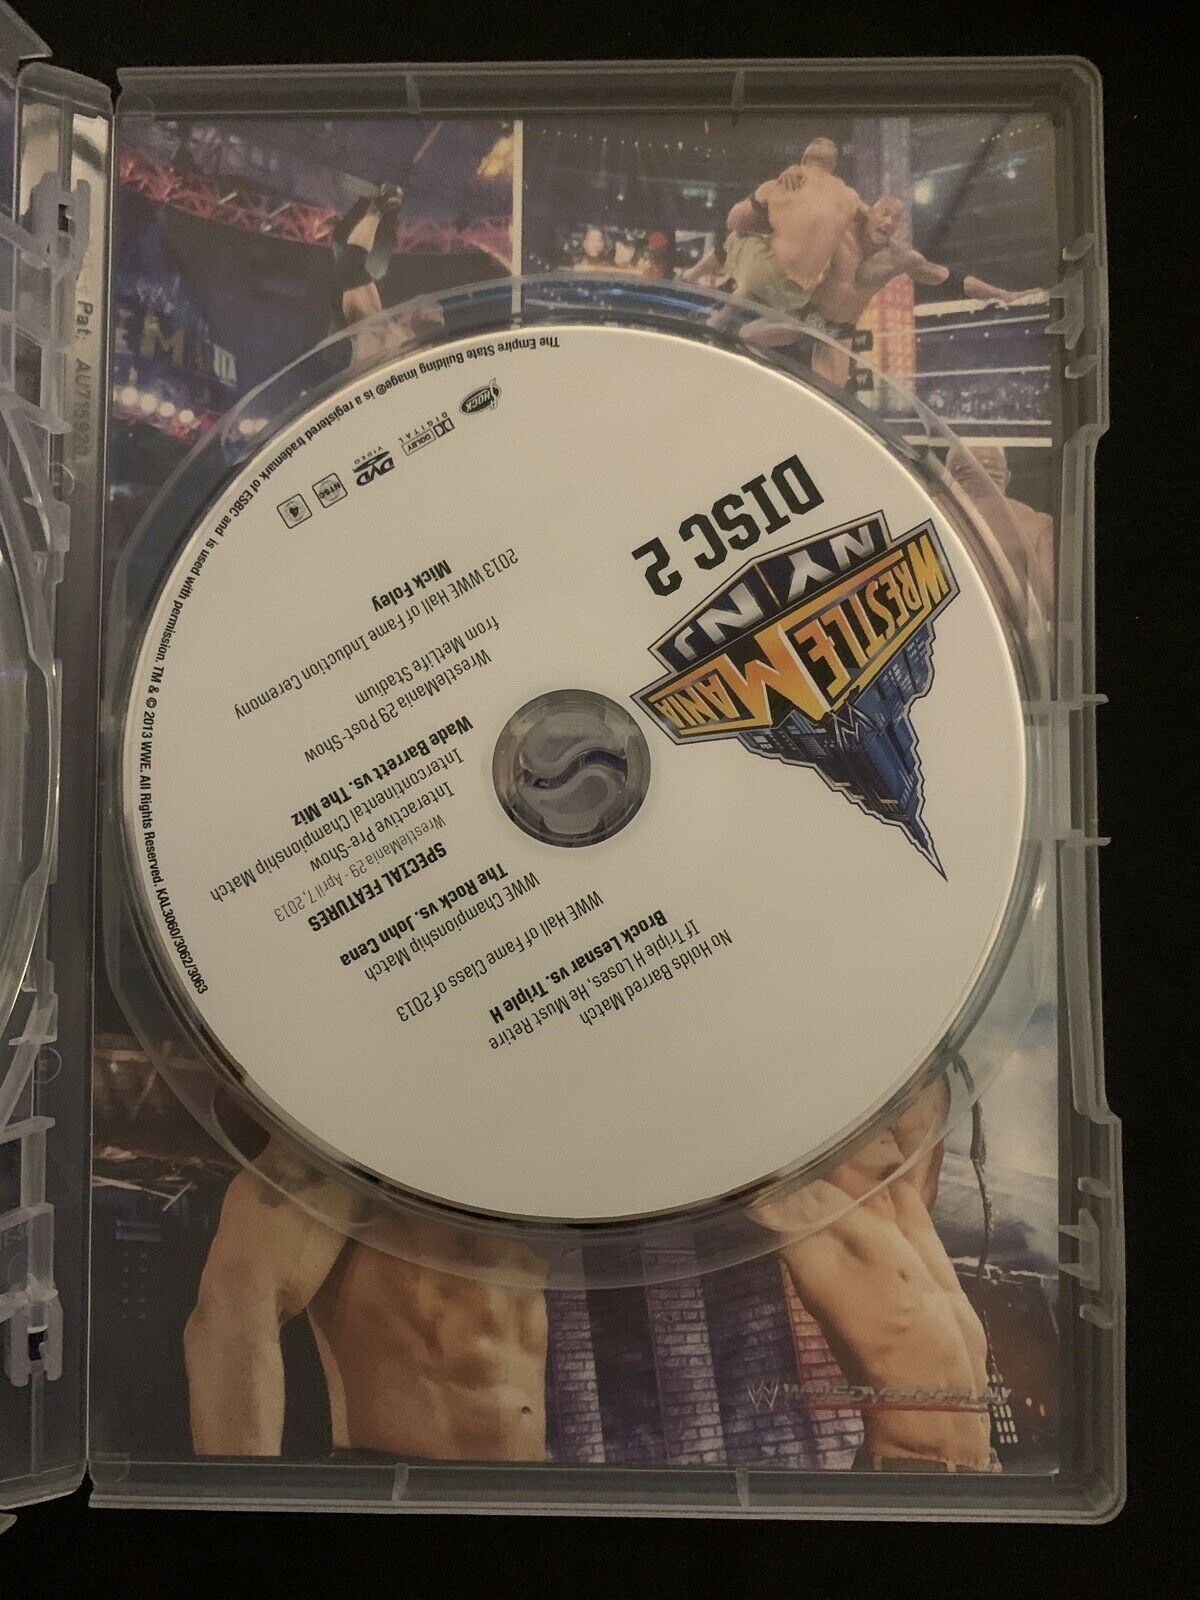 WWE Wrestle Mania XXIX 29 (DVD, 2013, 2-Disc Set) John Cena, The Rock - Region 4